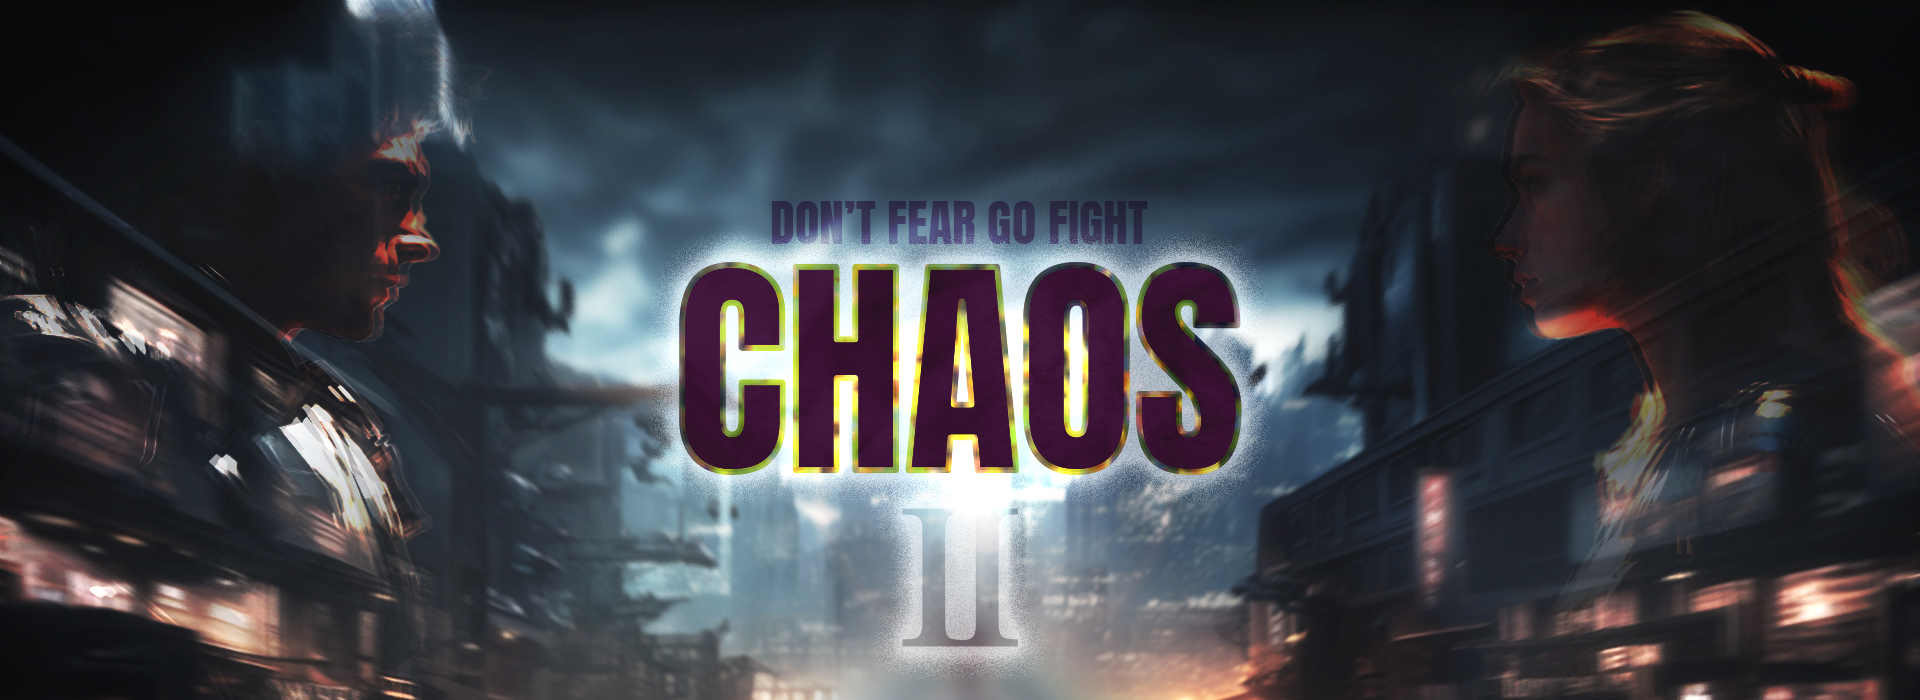 Chaos2